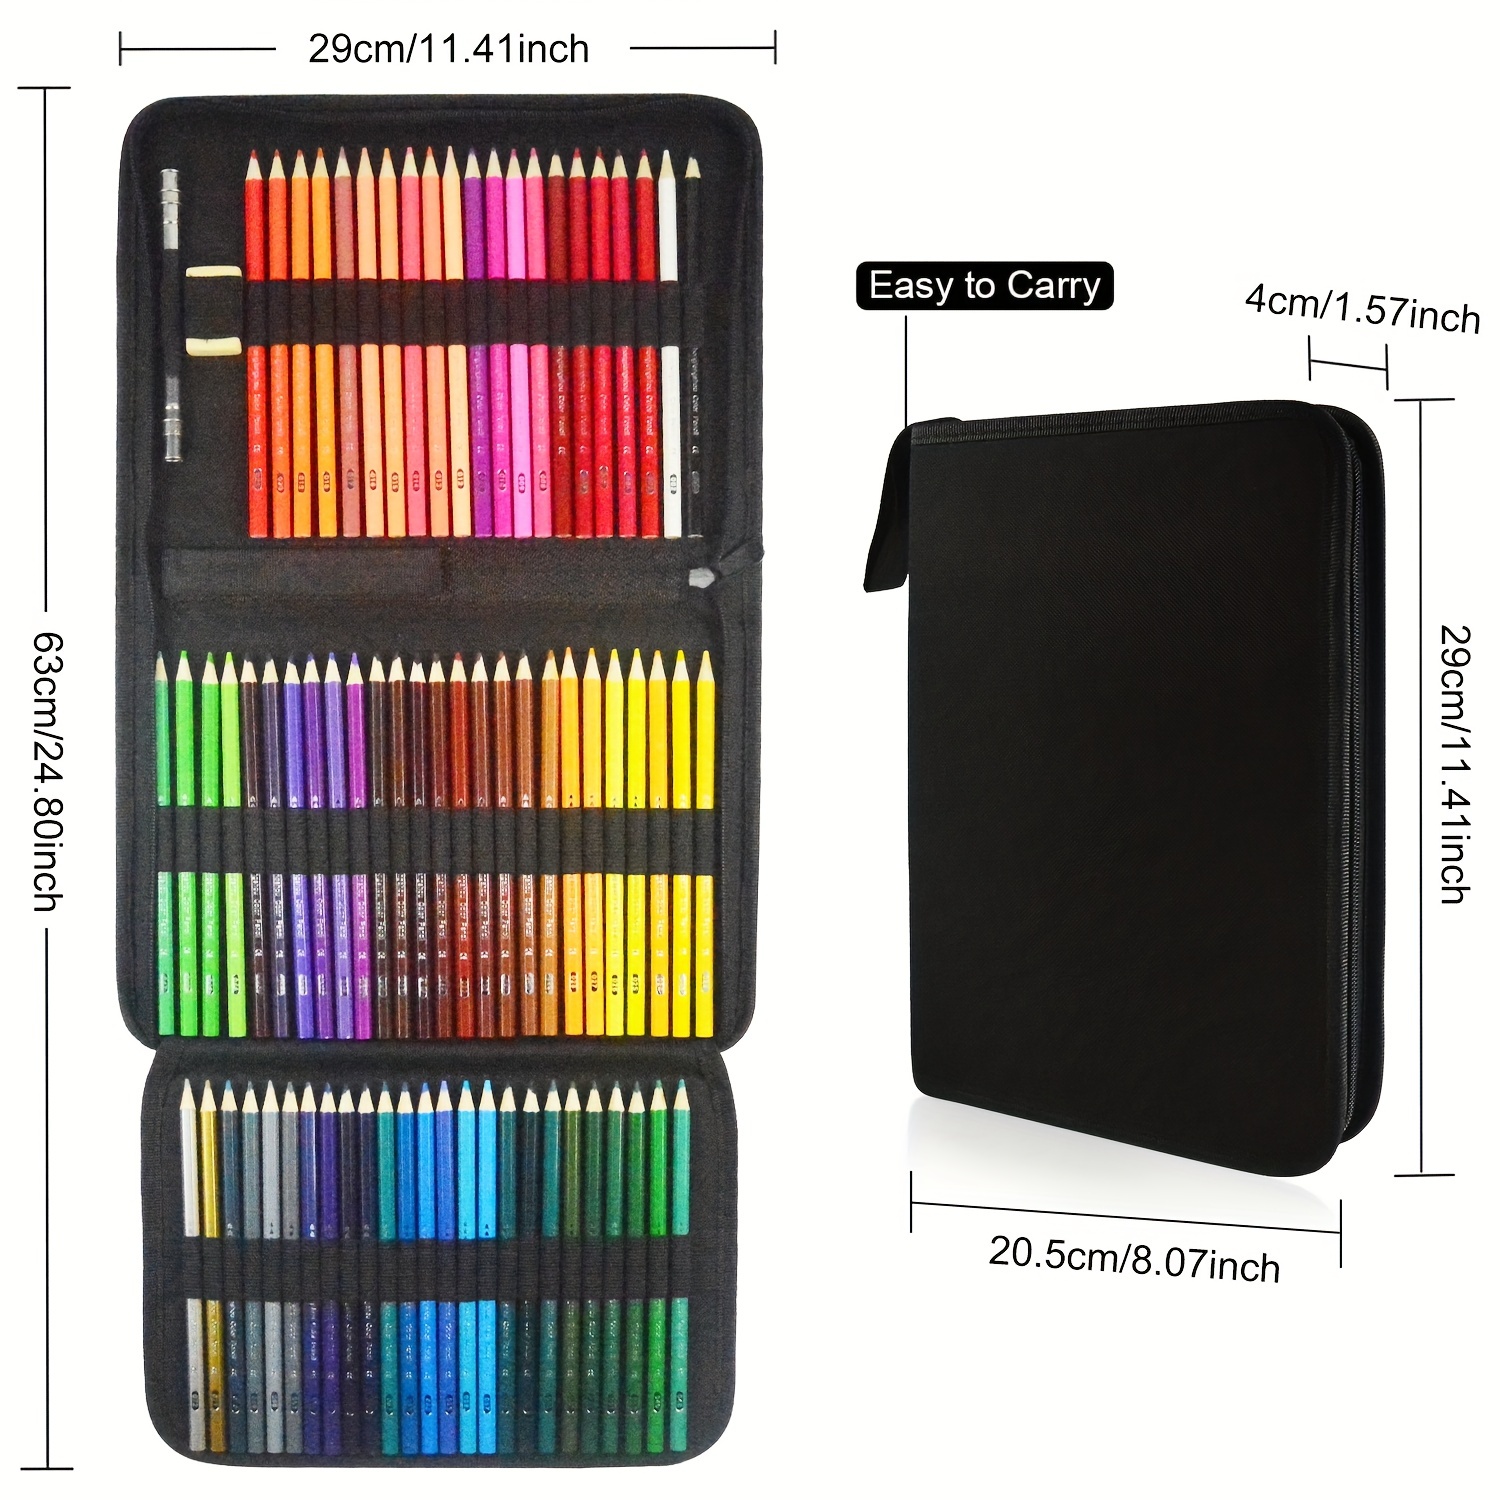 Colored Pencils Soft Core Color Pencil Set for Kids Adult Coloring